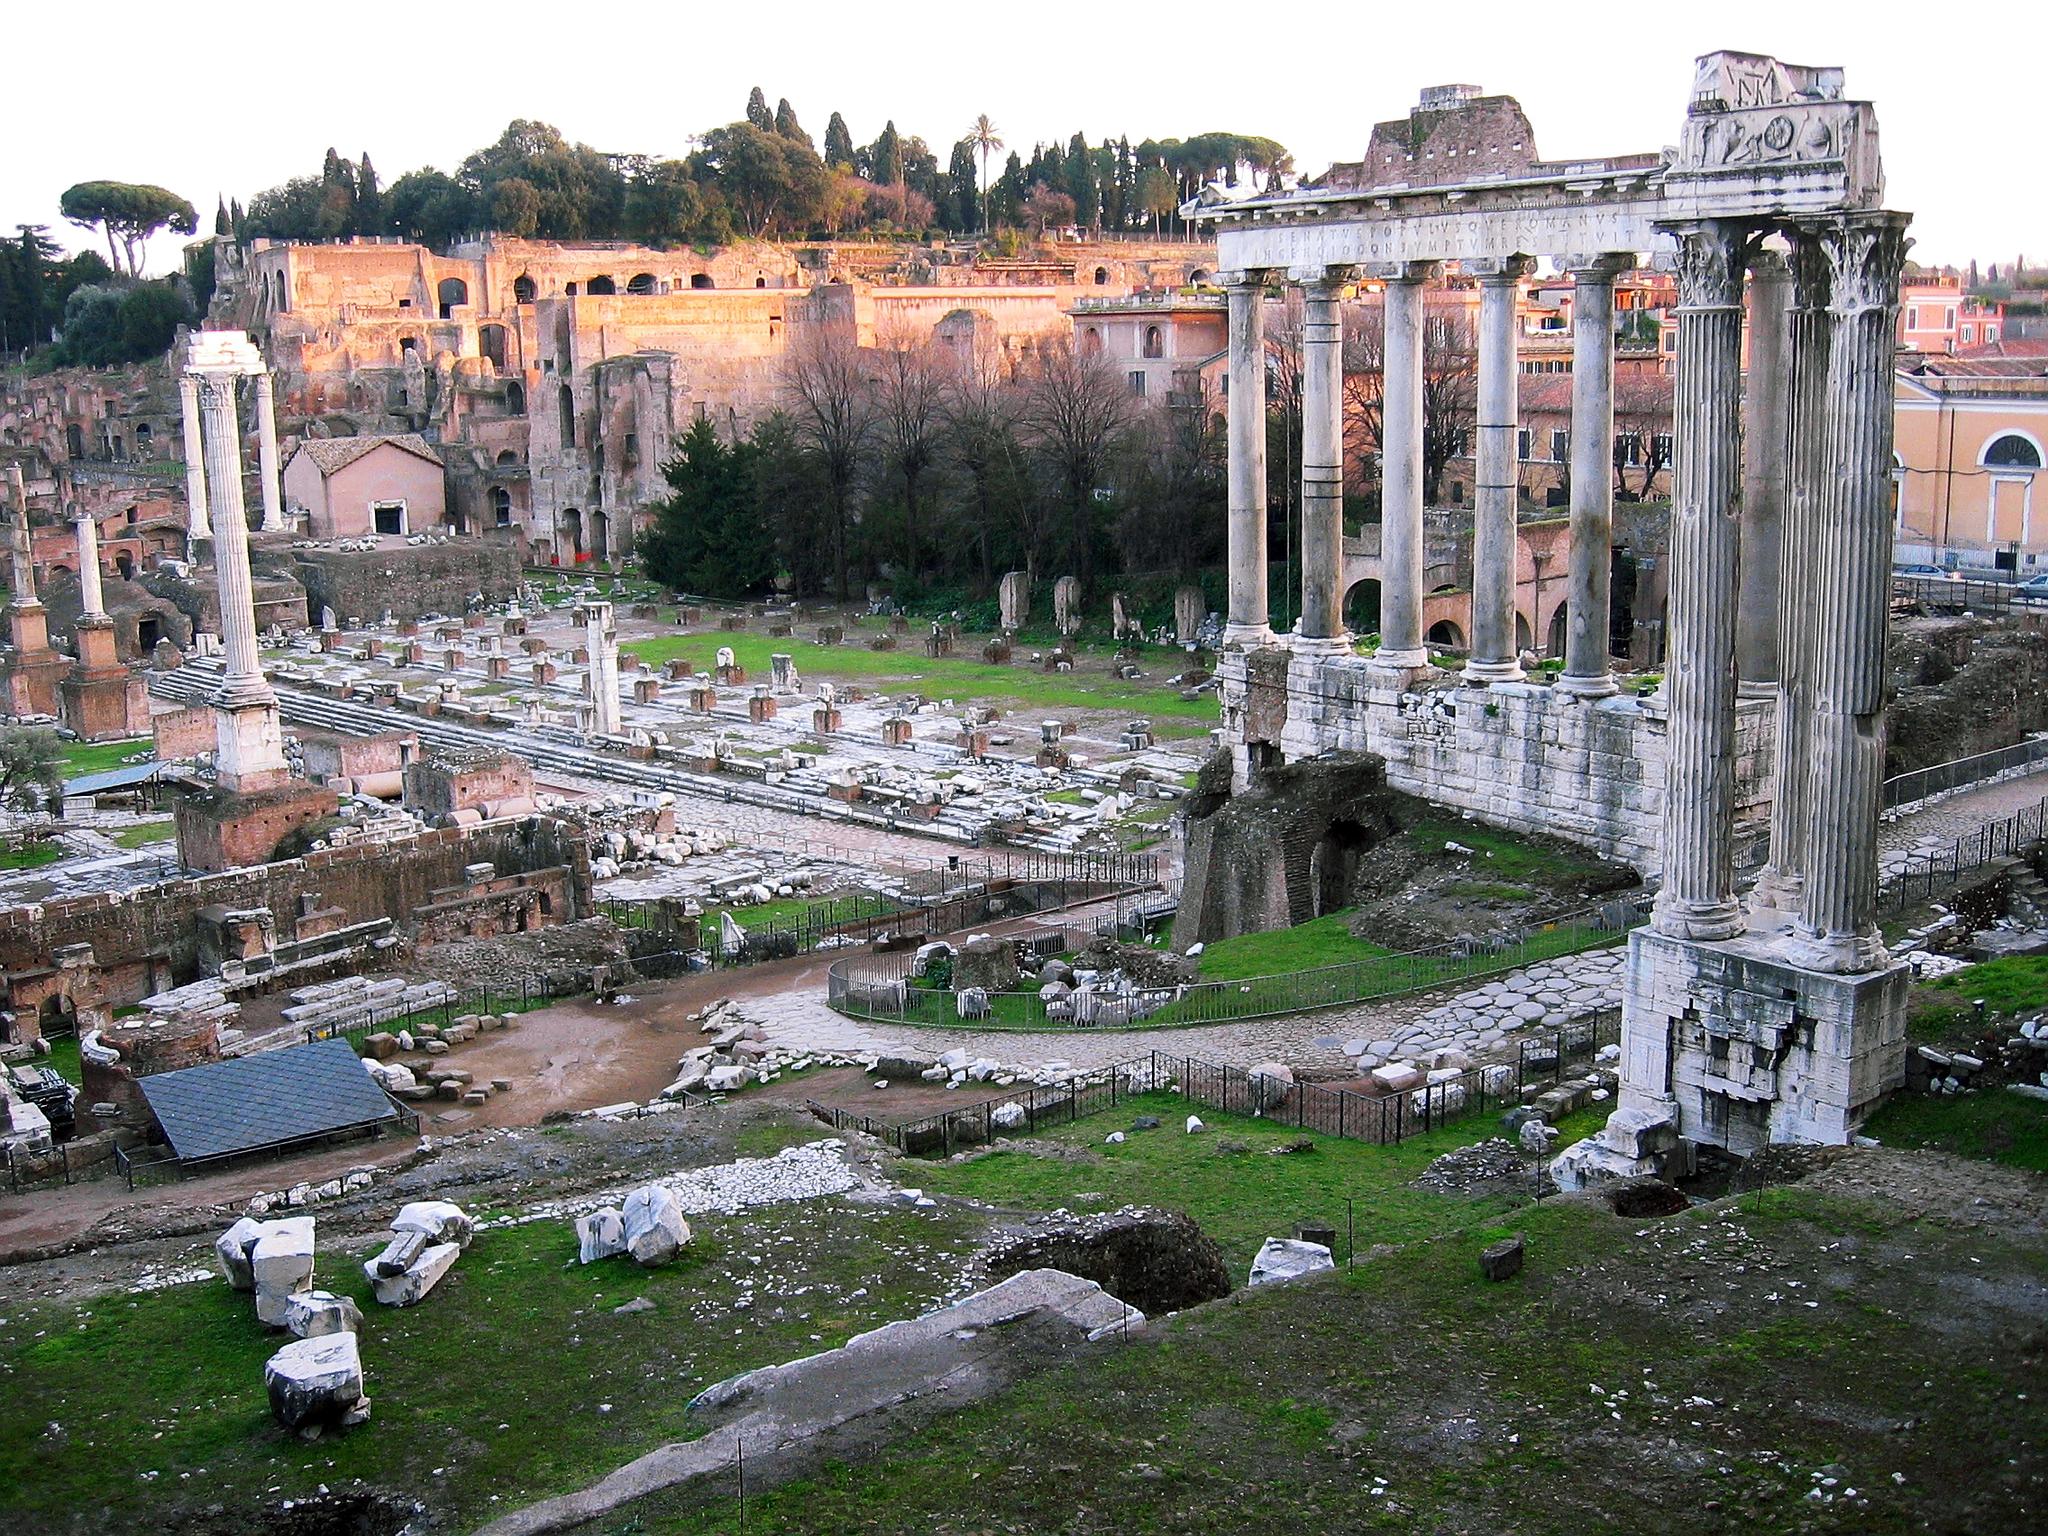 Startskuddet for halvmaratonet i Roma, går inne i Forum Romanum.